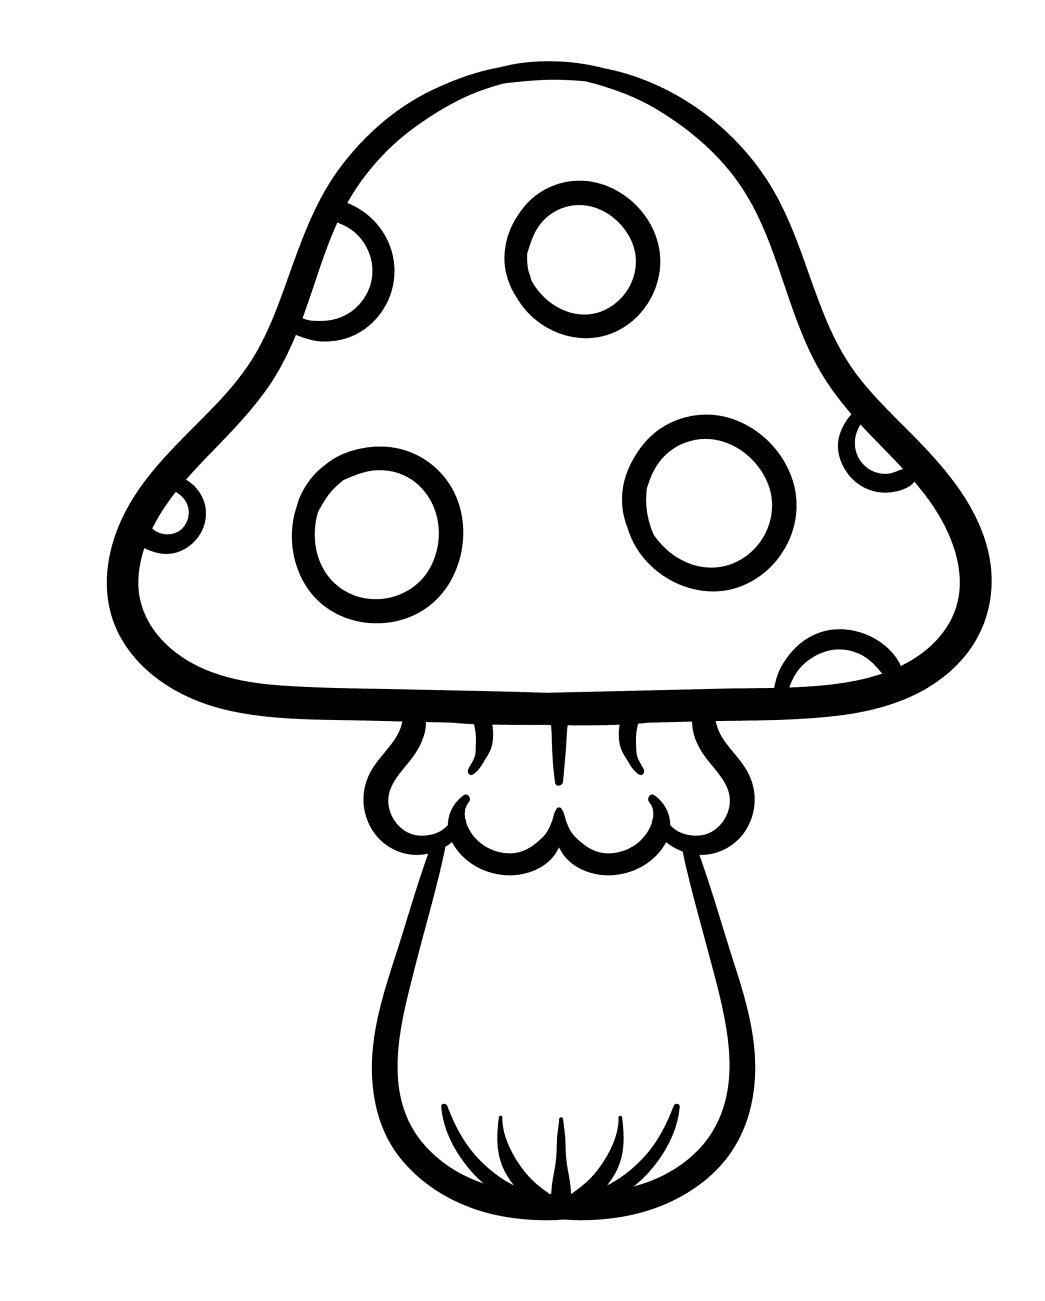 儿童彩页的蘑菇